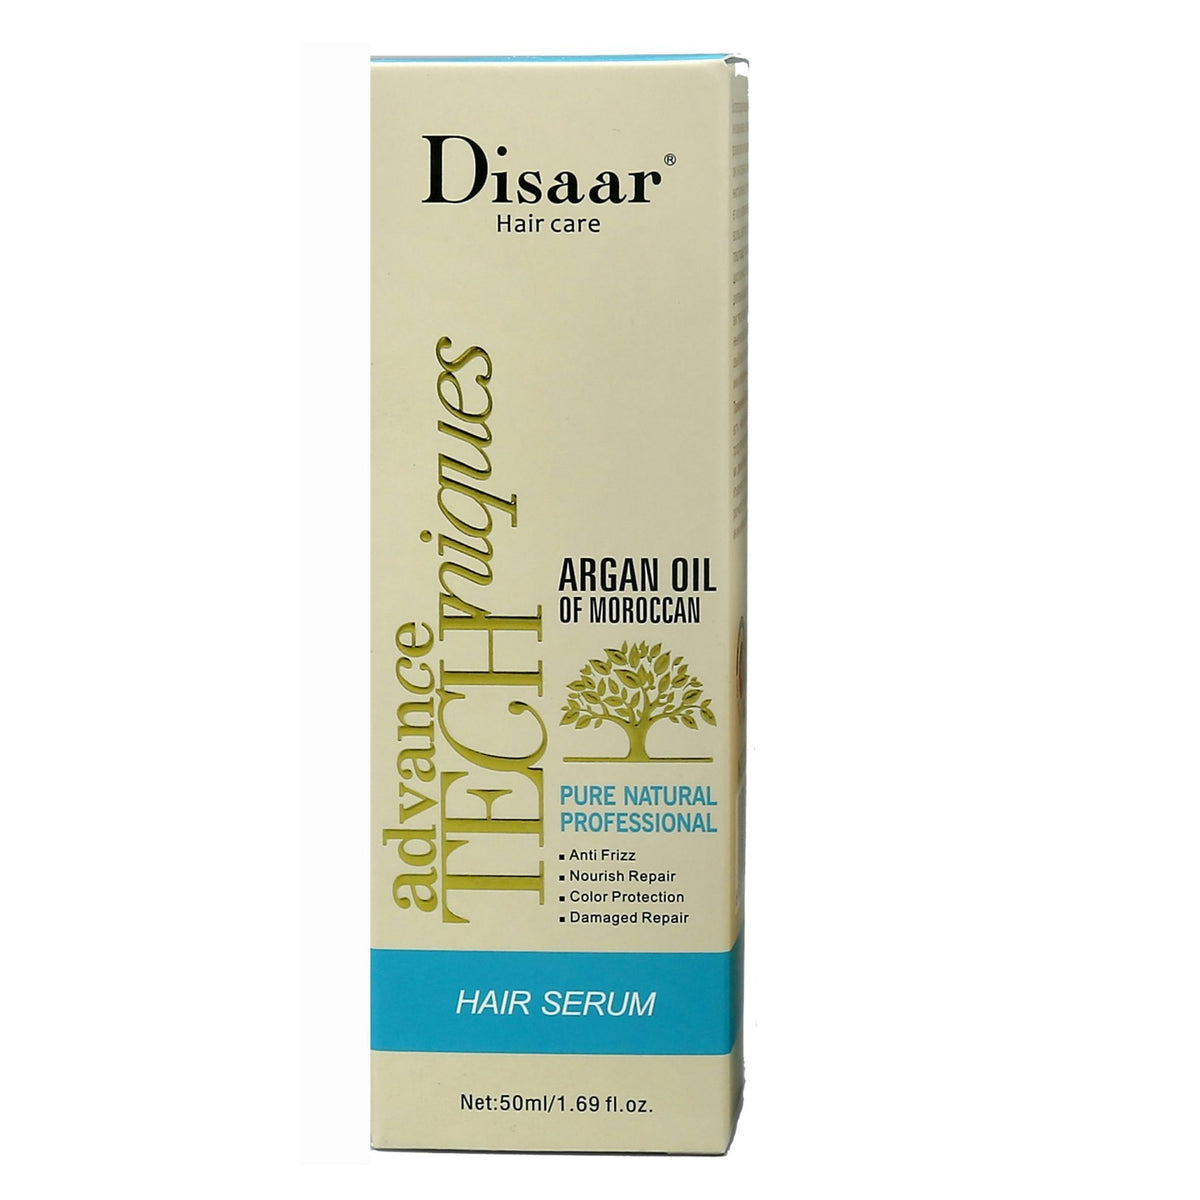 Disaar Hair Care Argan Oil of Moroccan Blue Hair Serum Advance Techniquies 50ml freeshipping - lasertag.pk